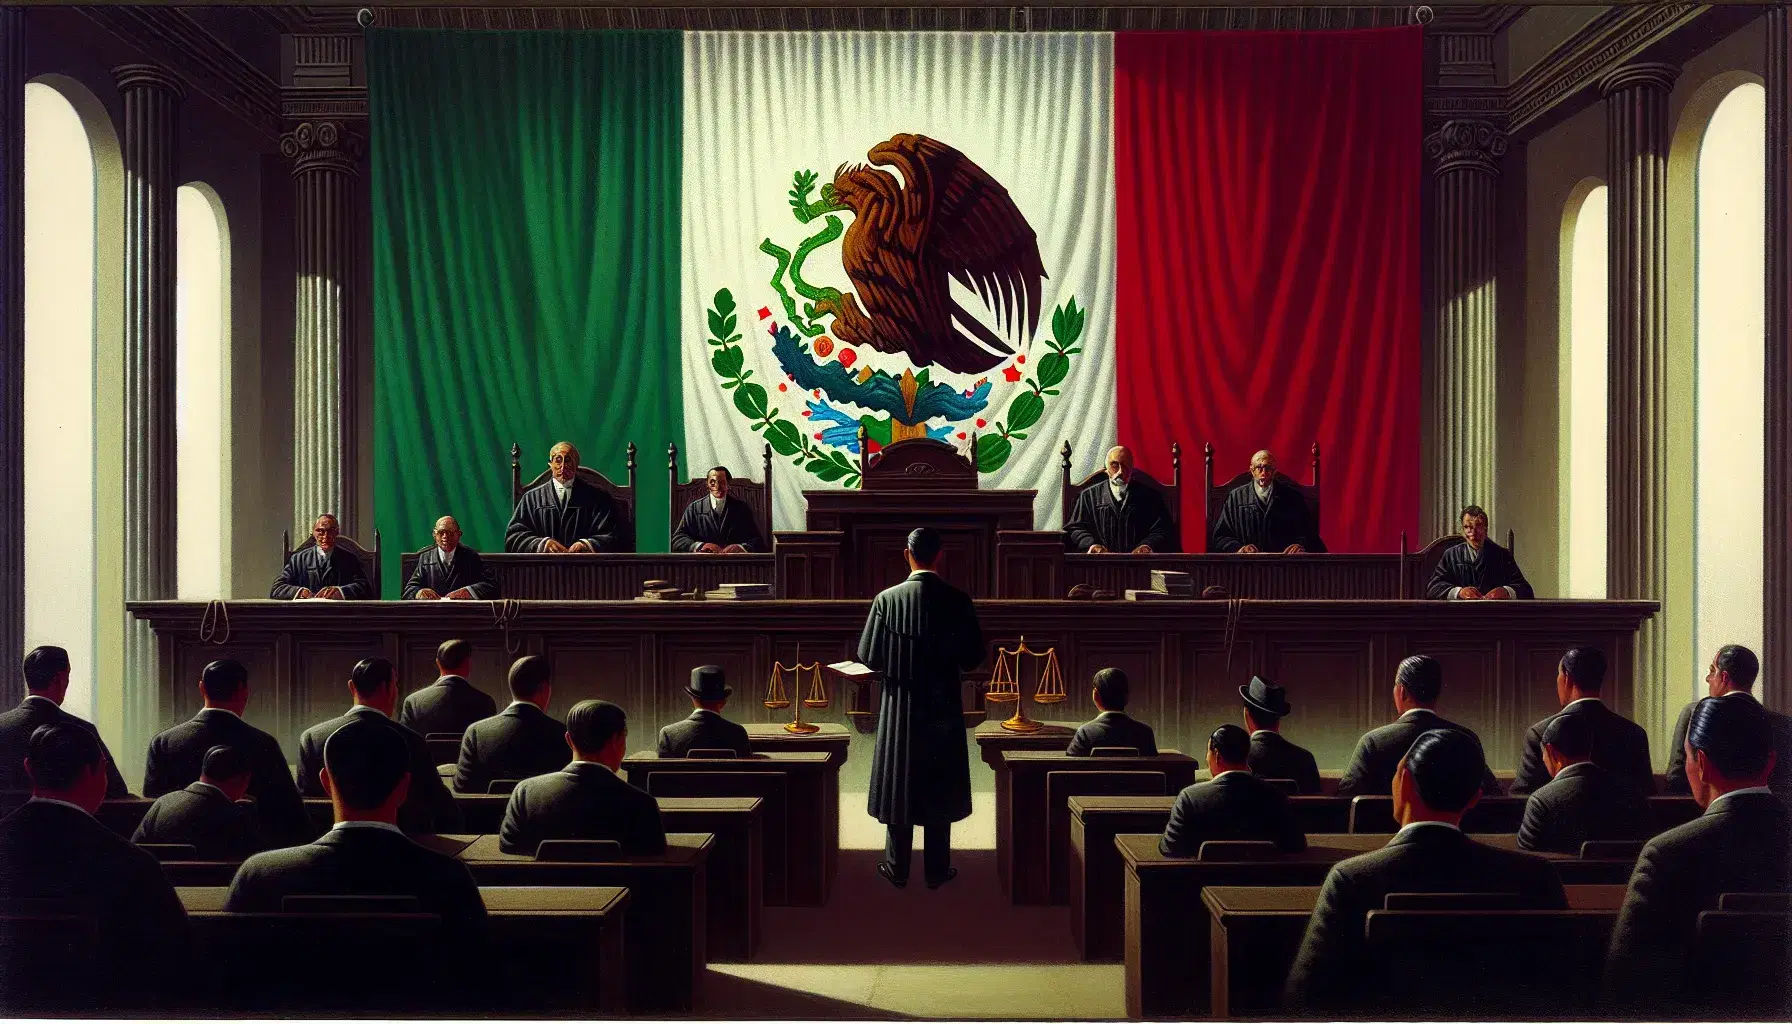 Escena de un tribunal con juez en toga negra, abogados en trajes oscuros, partes en atuendos claros y una balanza de la justicia en primer plano, bajo una bandera de México.